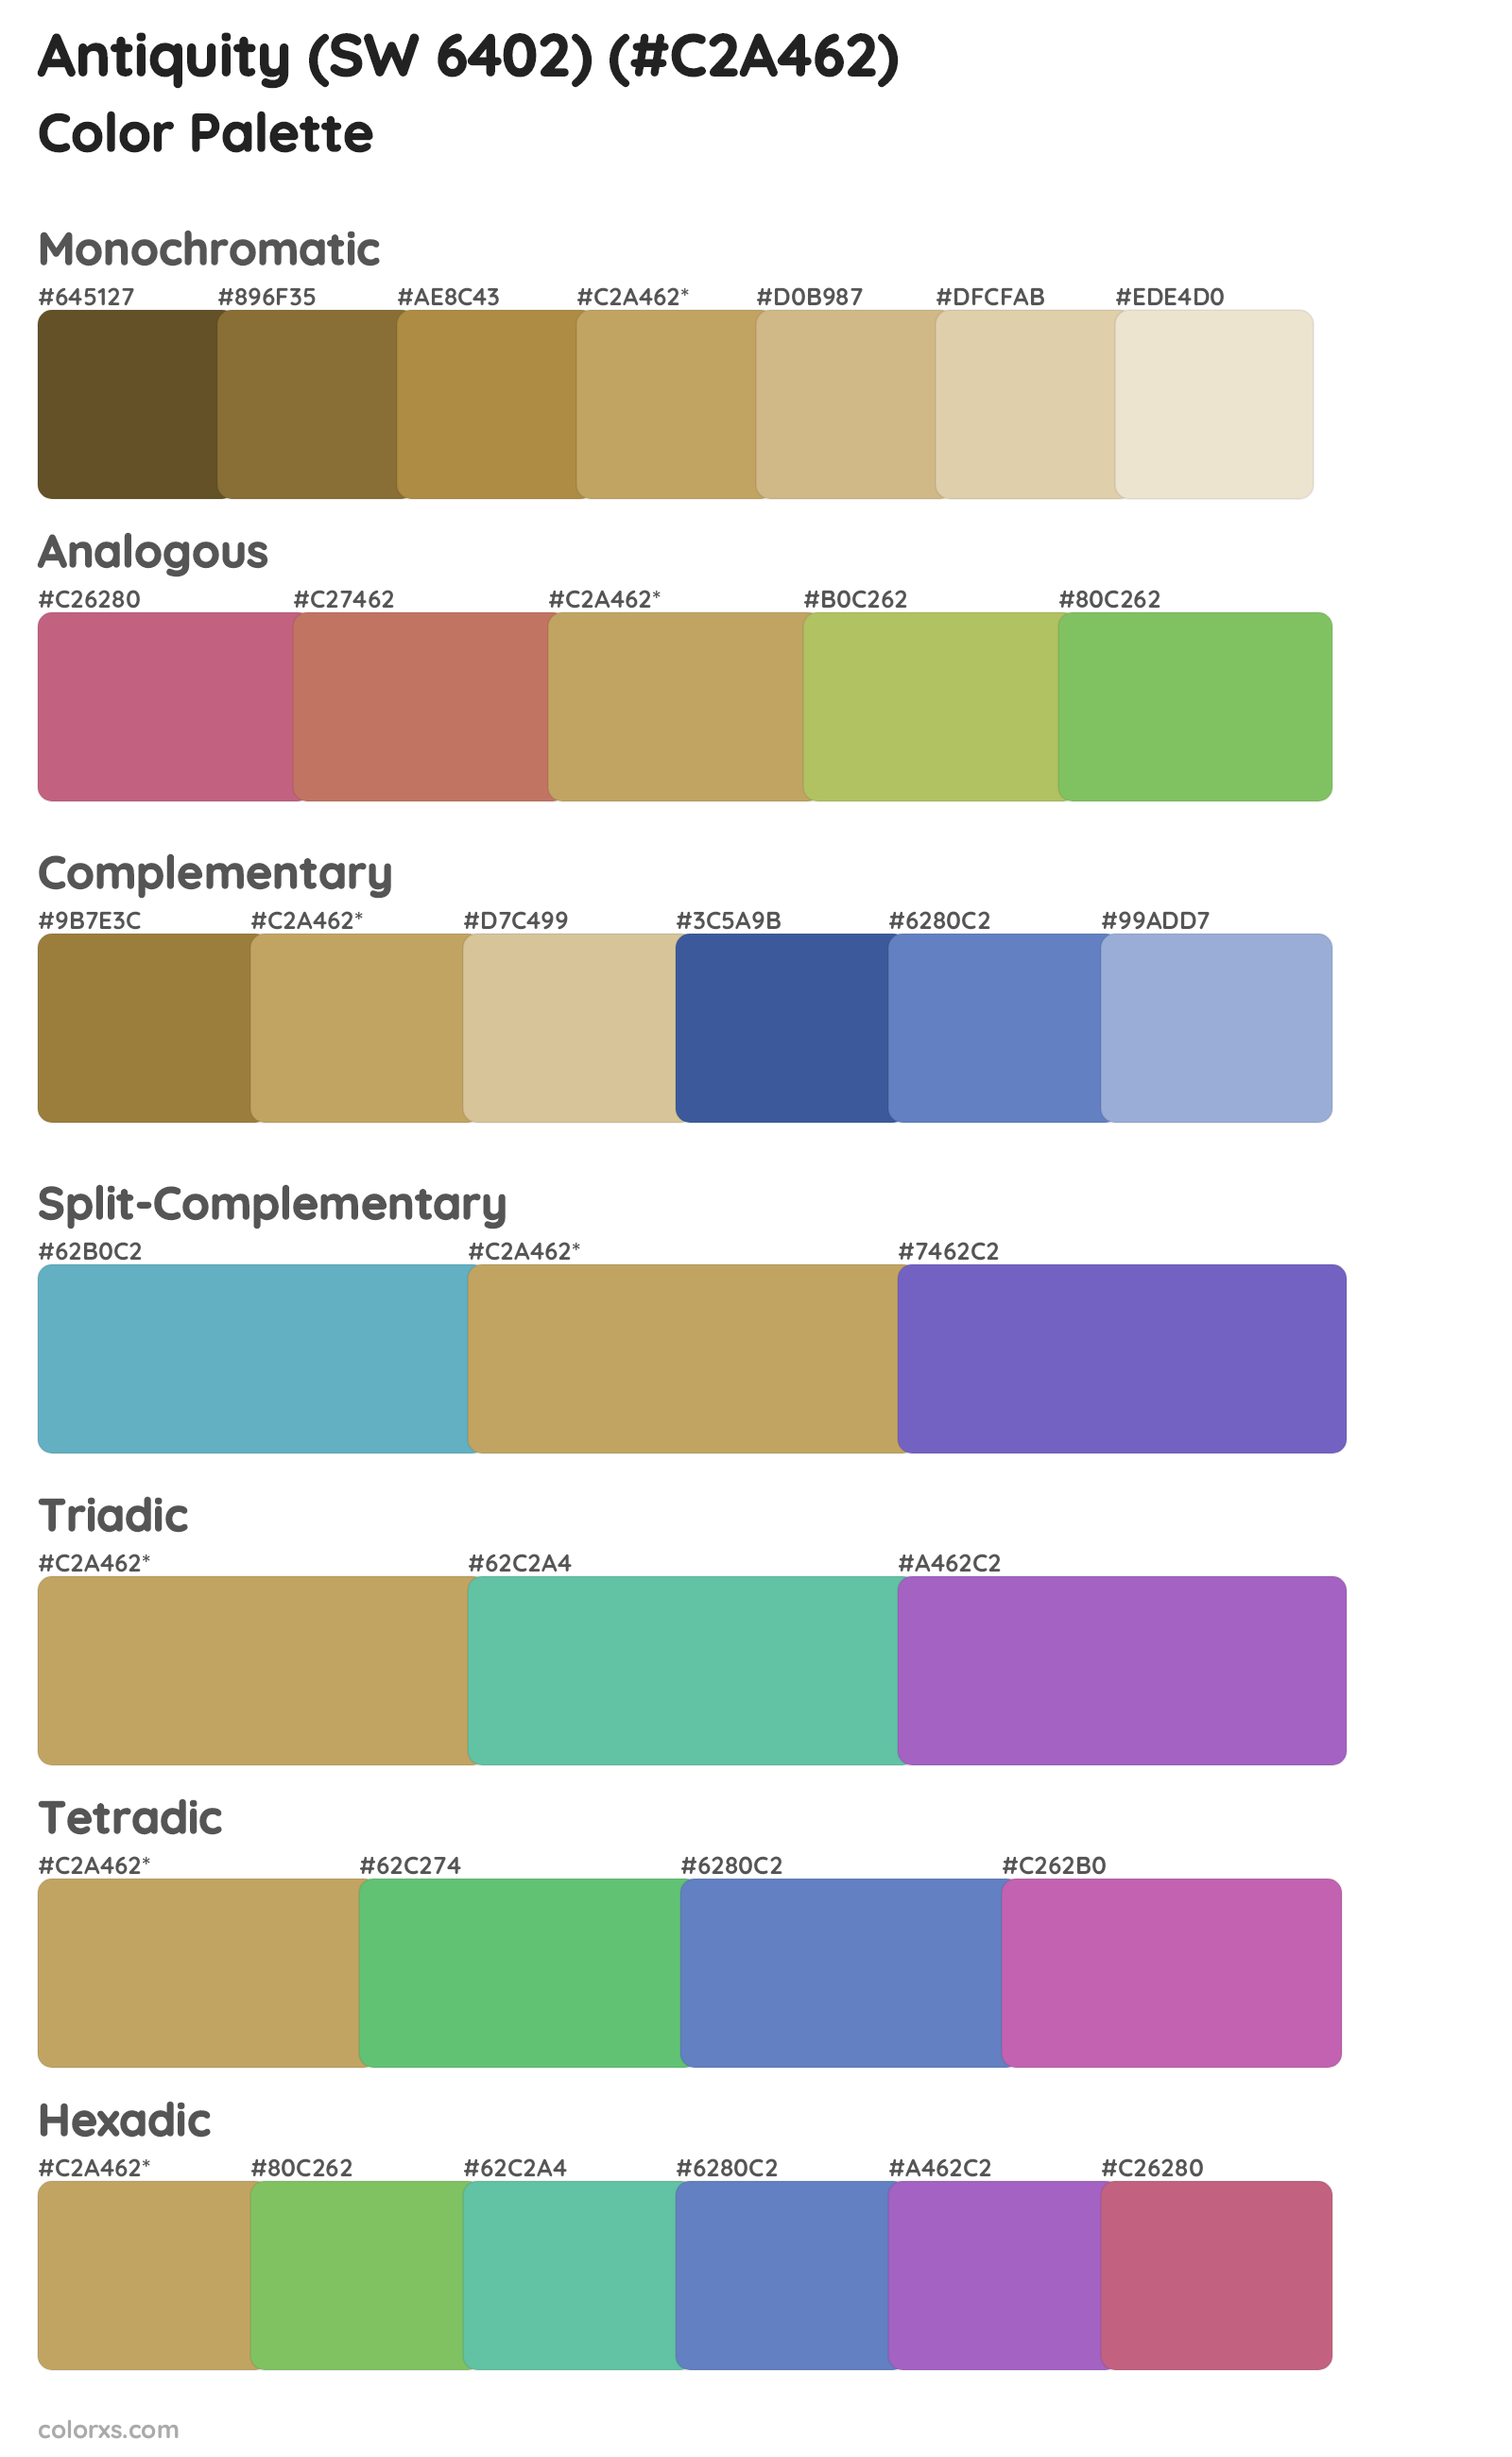 Antiquity (SW 6402) Color Scheme Palettes